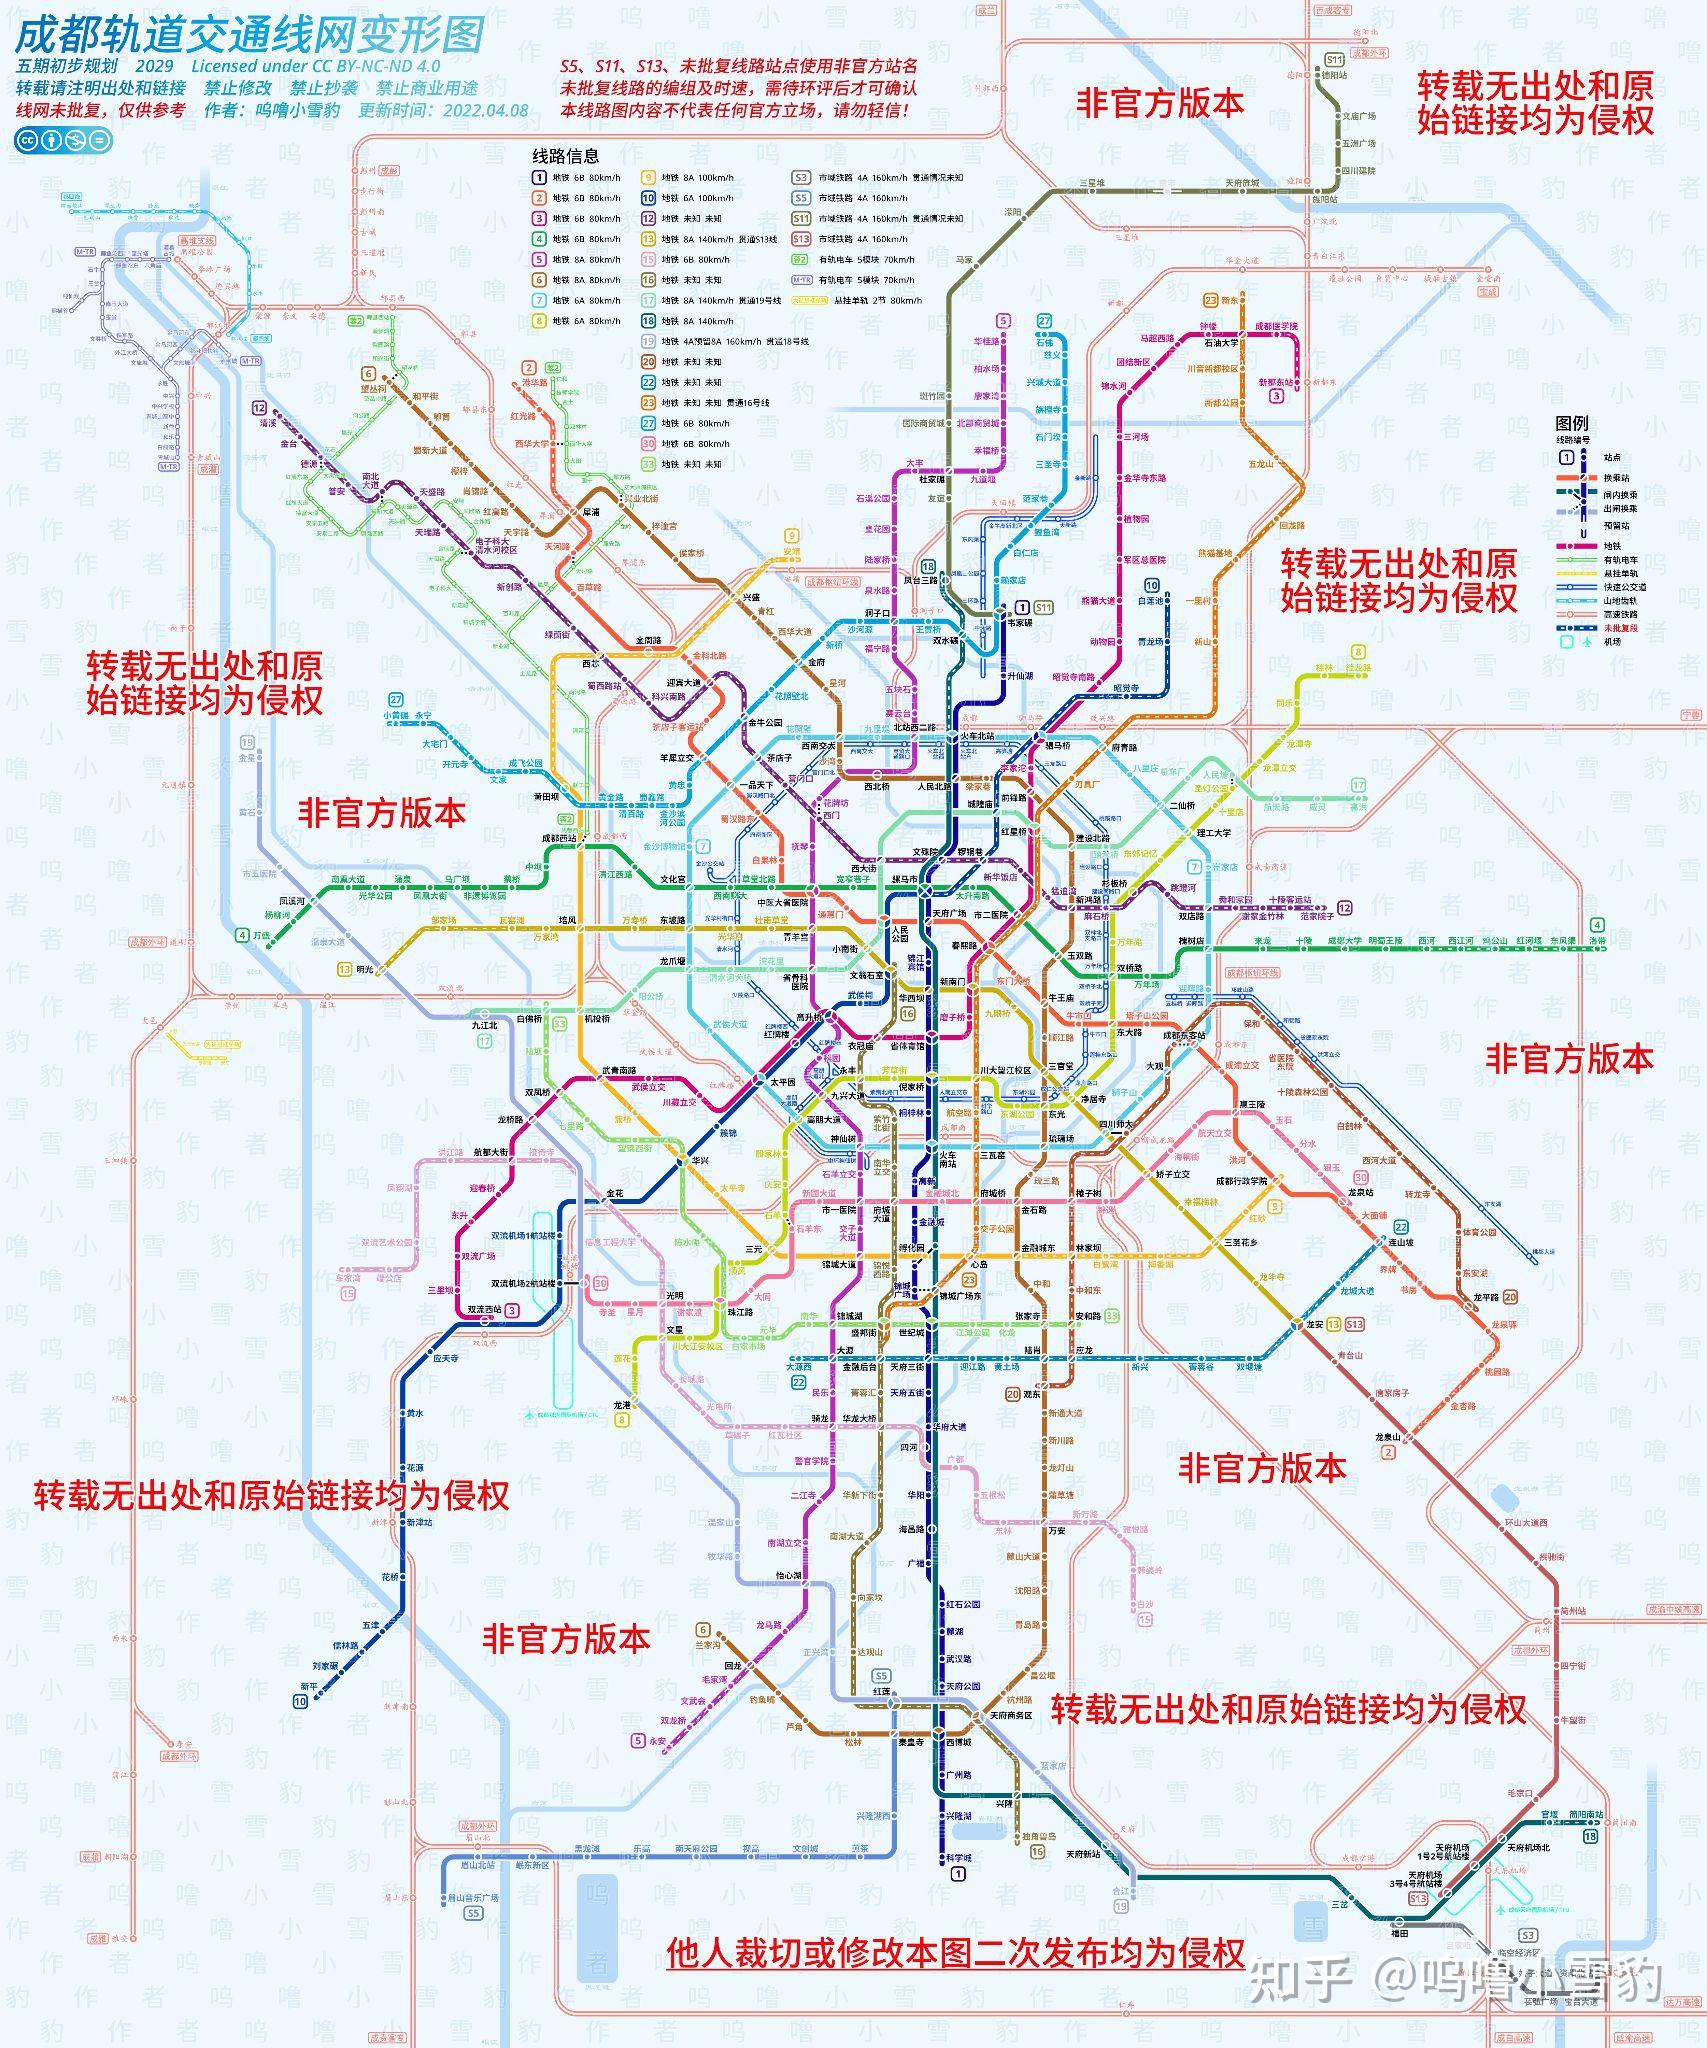 自制《成都轨道交通线网变形图(五期初步规划)》(202204更新)